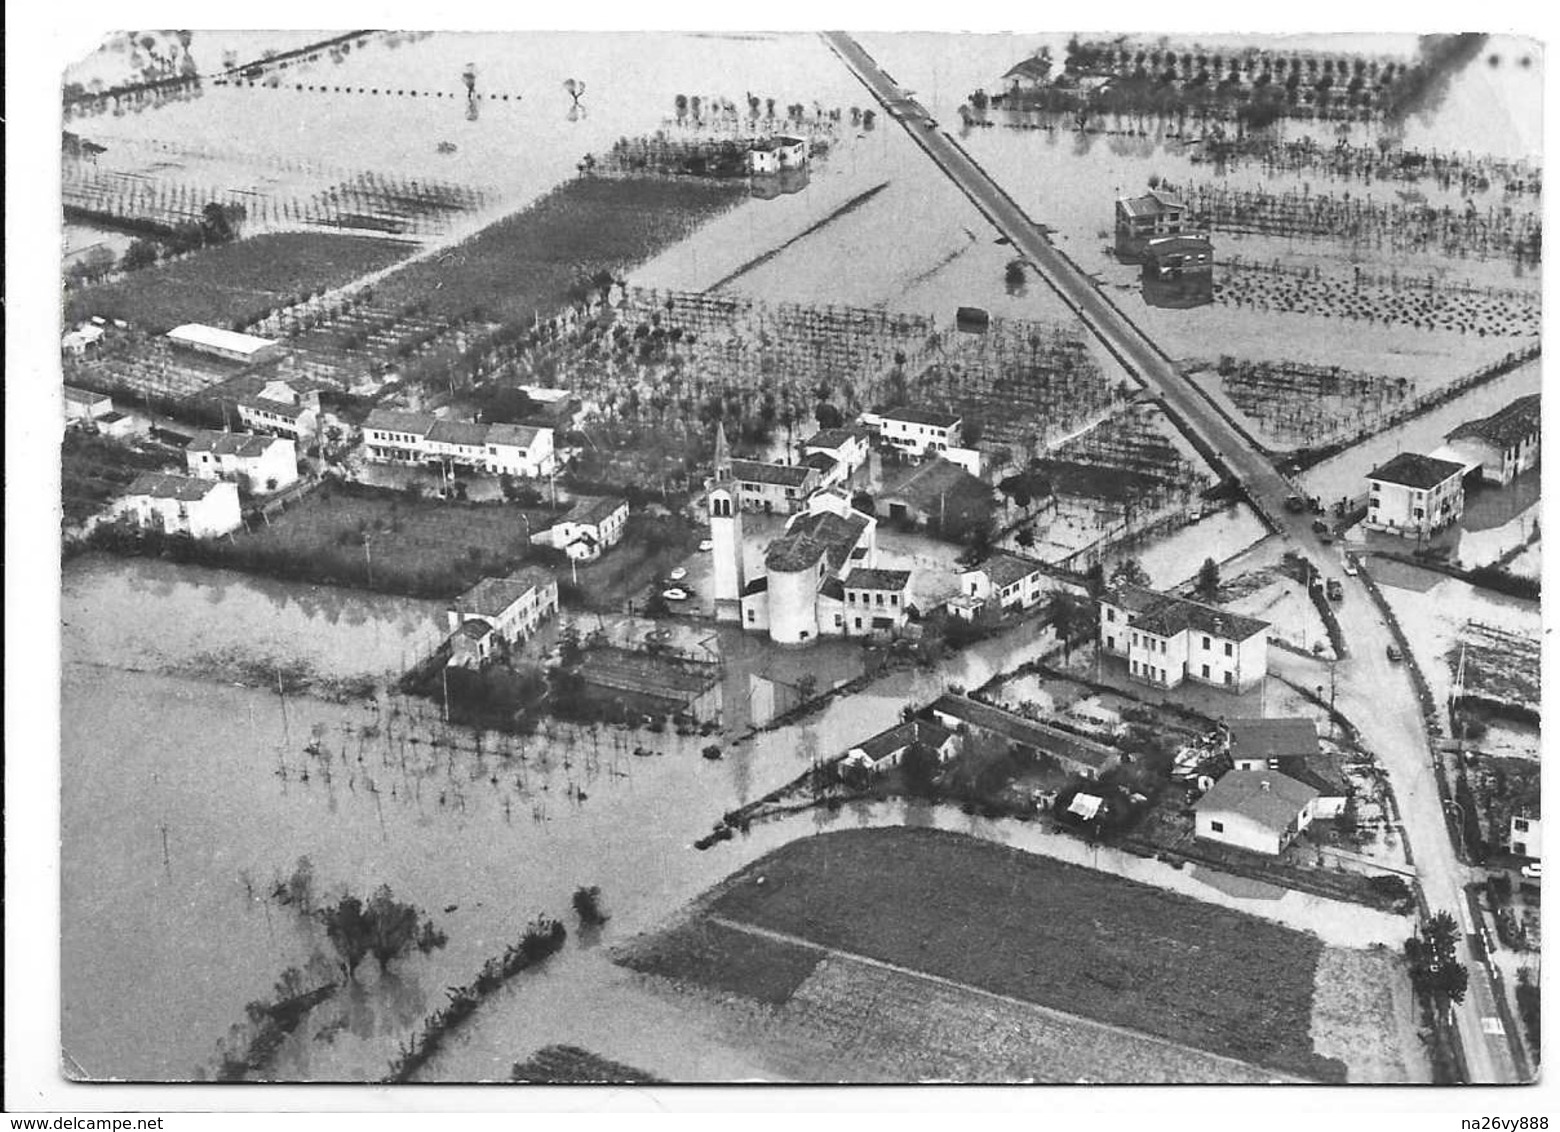 Veduta Dall'alto Di Lasson Di Meolo (Venezia). Alluvione 4 Novembre 1966. - Venezia (Venice)